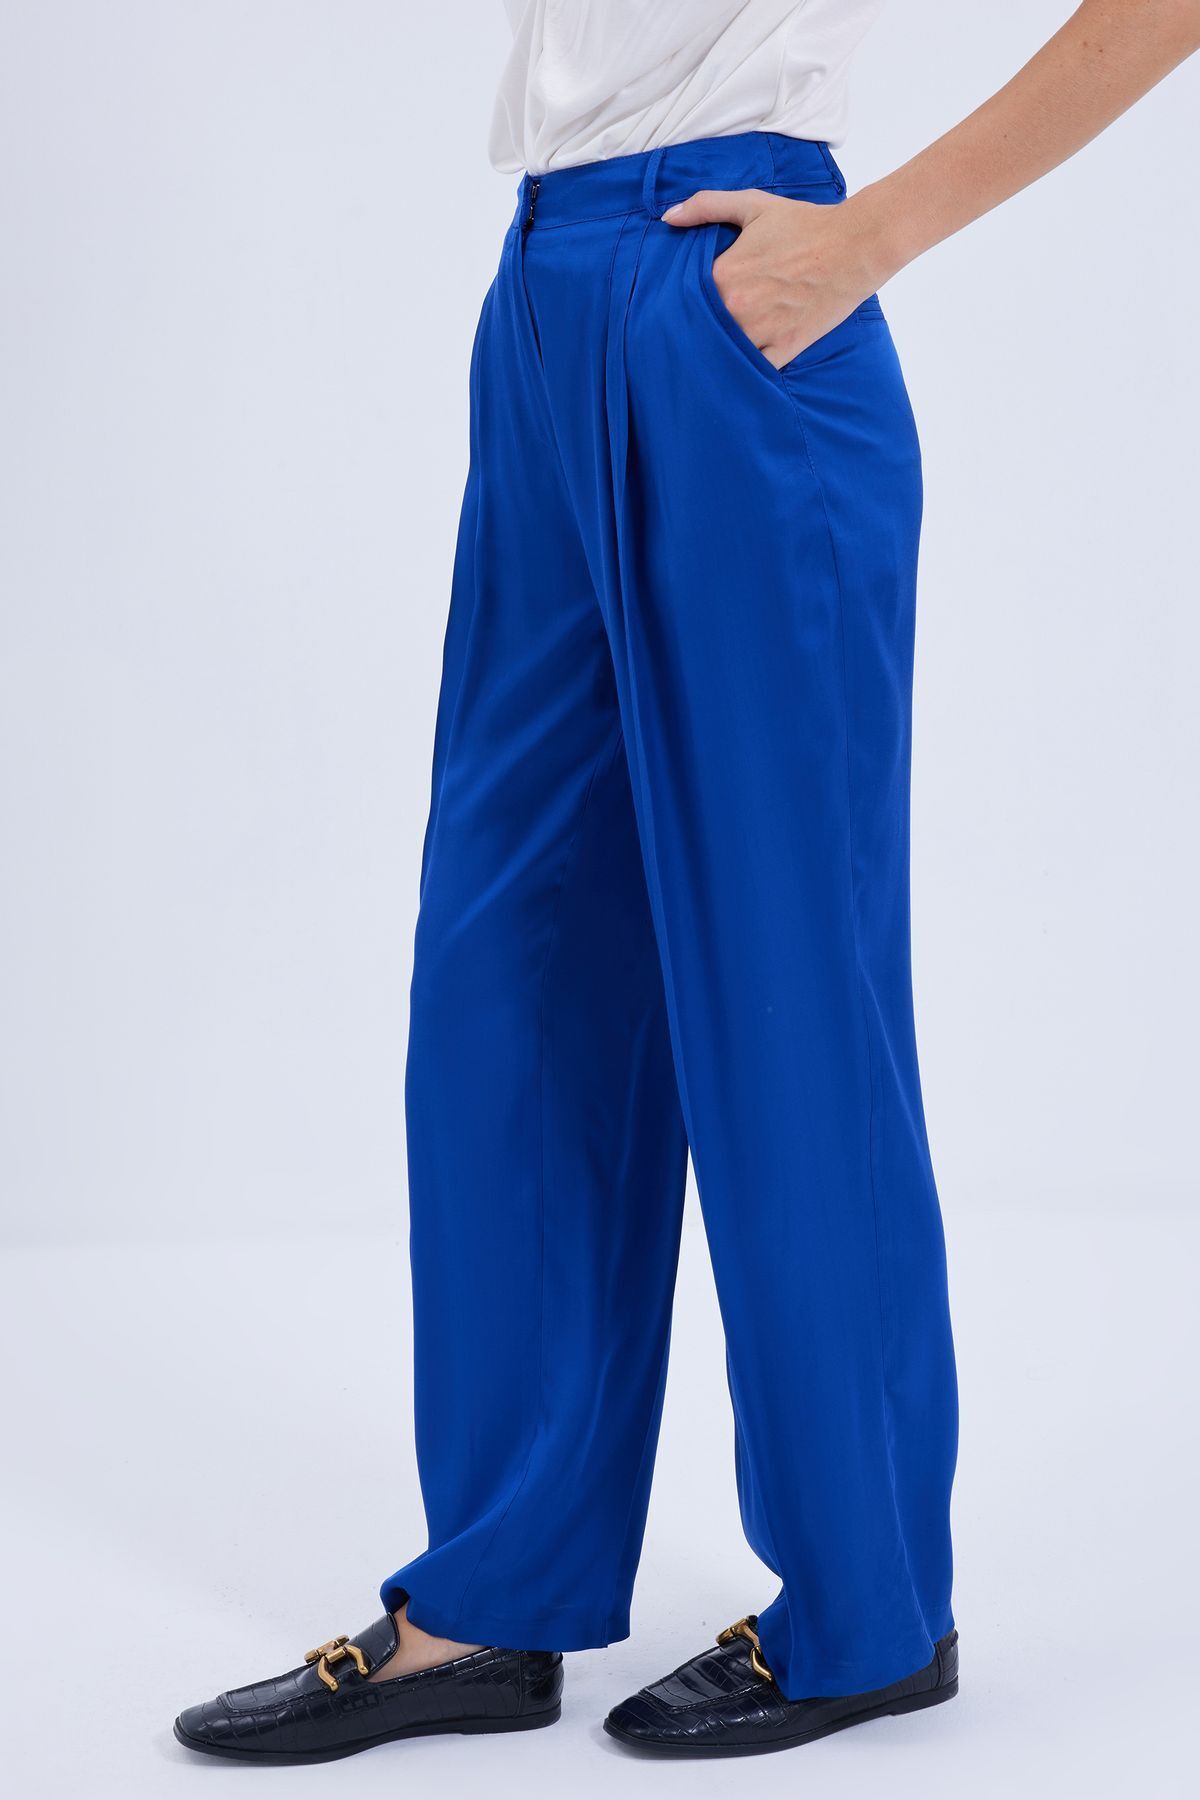 Karaca Kadın Pantolon-Saks Mavi